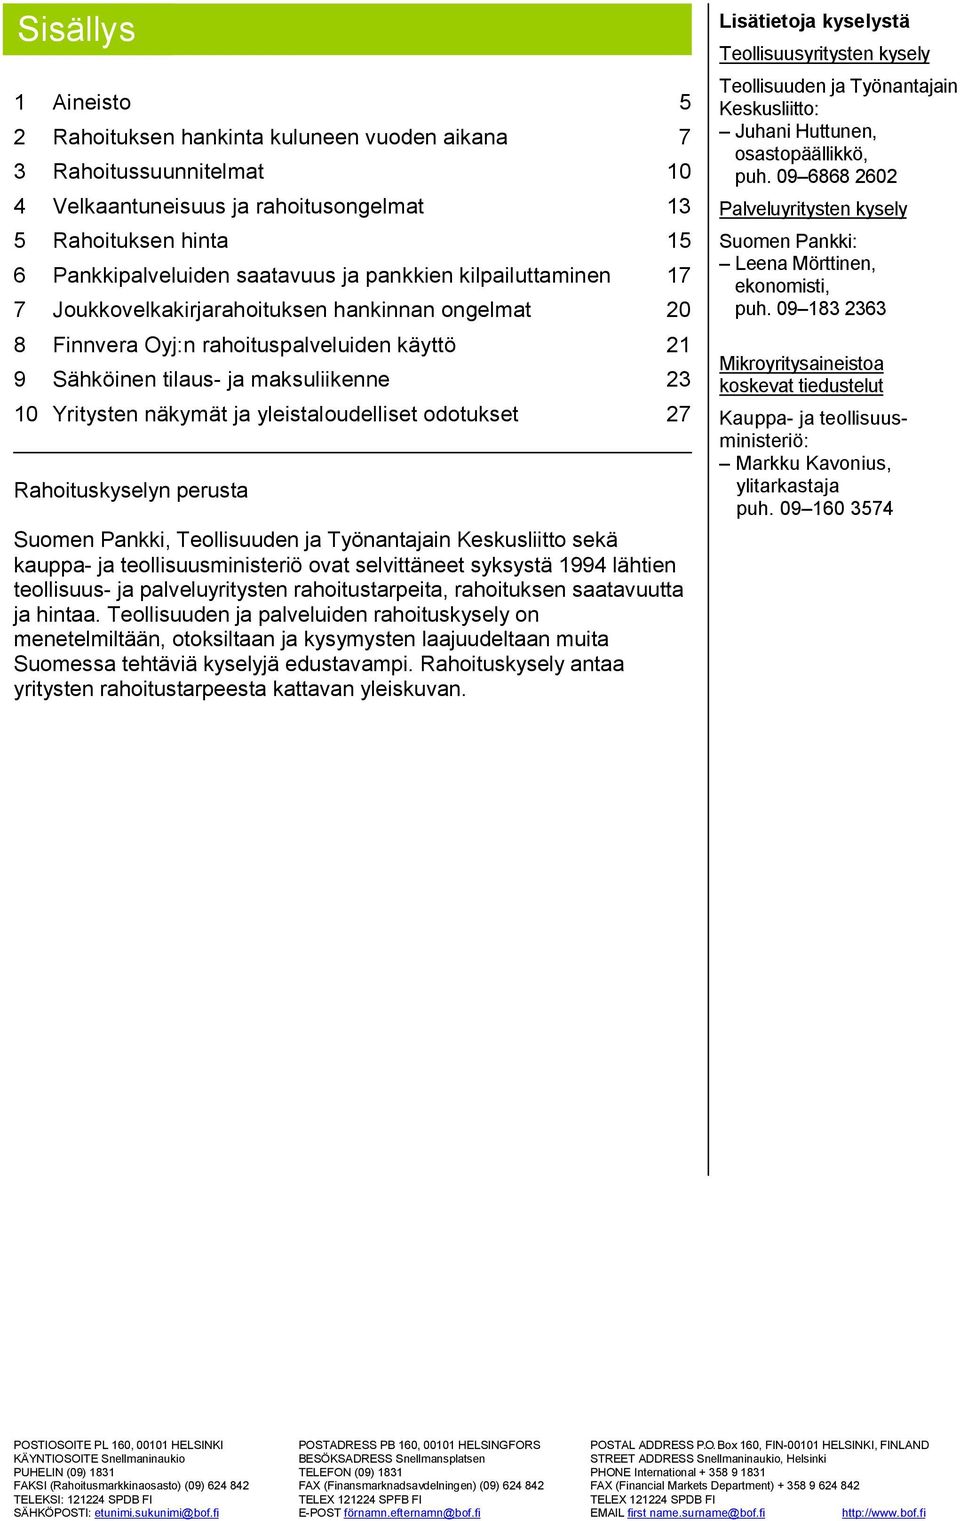 yleistaloudelliset odotukset 27 Rahoituskyselyn perusta Suomen Pankki, Teollisuuden ja Työnantajain Keskusliitto sekä kauppa- ja teollisuusministeriö ovat selvittäneet syksystä 1994 lähtien